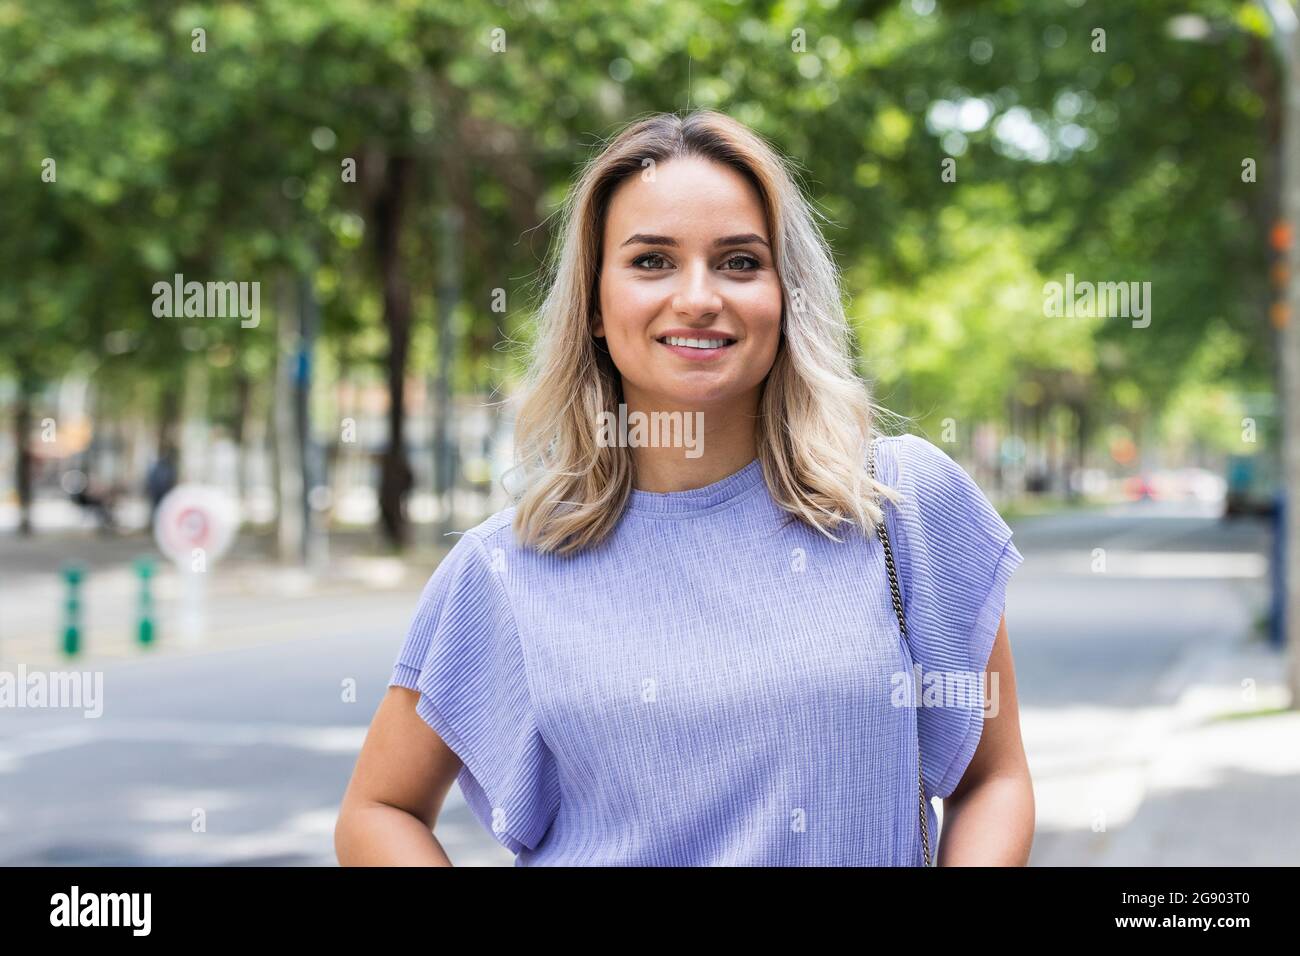 Lächelnde junge Frau mit blonden Haaren, die auf der Straße stehen Stockfoto